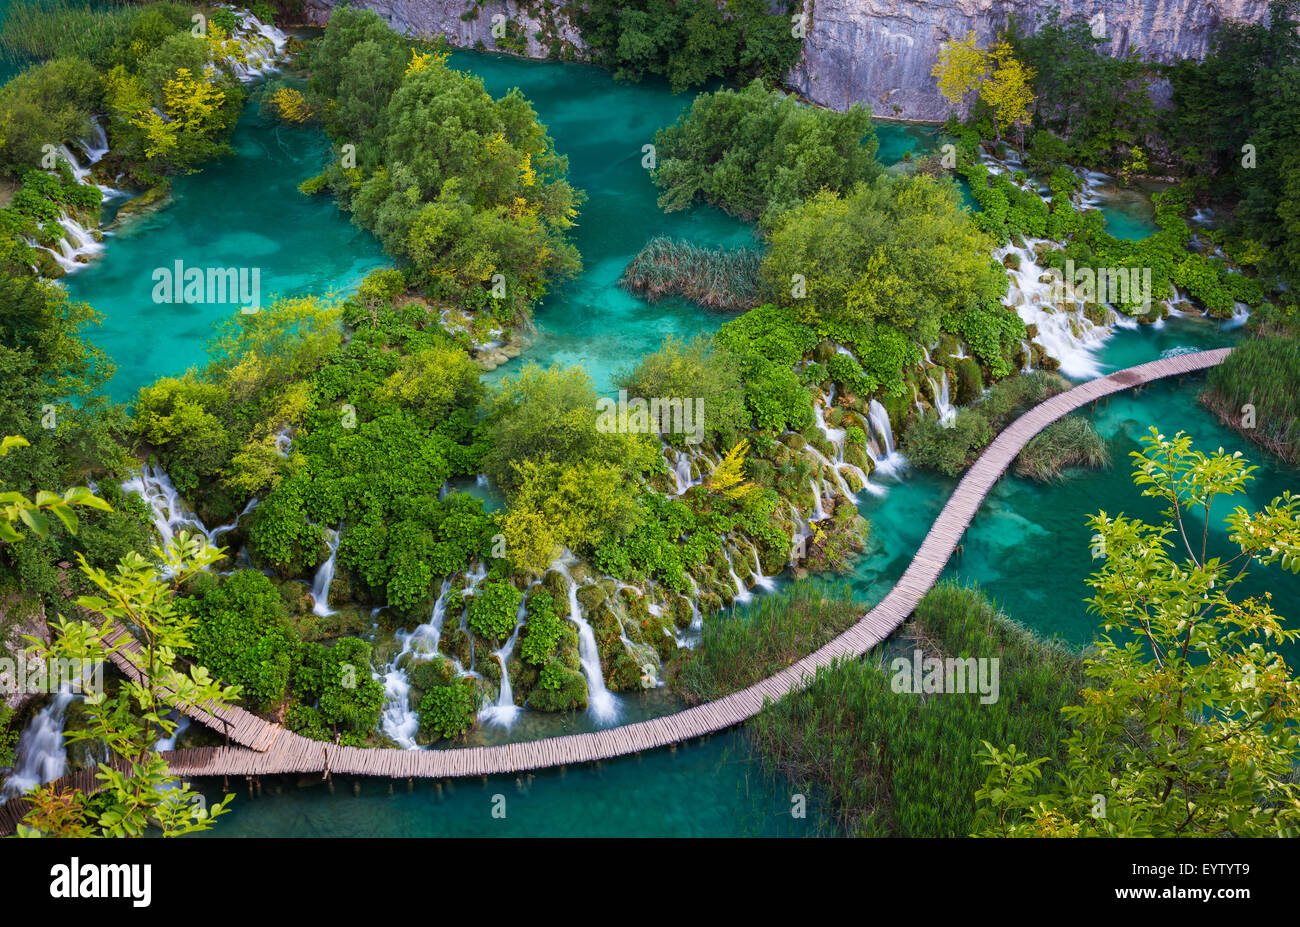 Parque Nacional de los Lagos de Plitvice es uno de los parques nacionales más antiguos en el sudeste de Europa y el parque nacional más grande de Croacia. Foto de stock